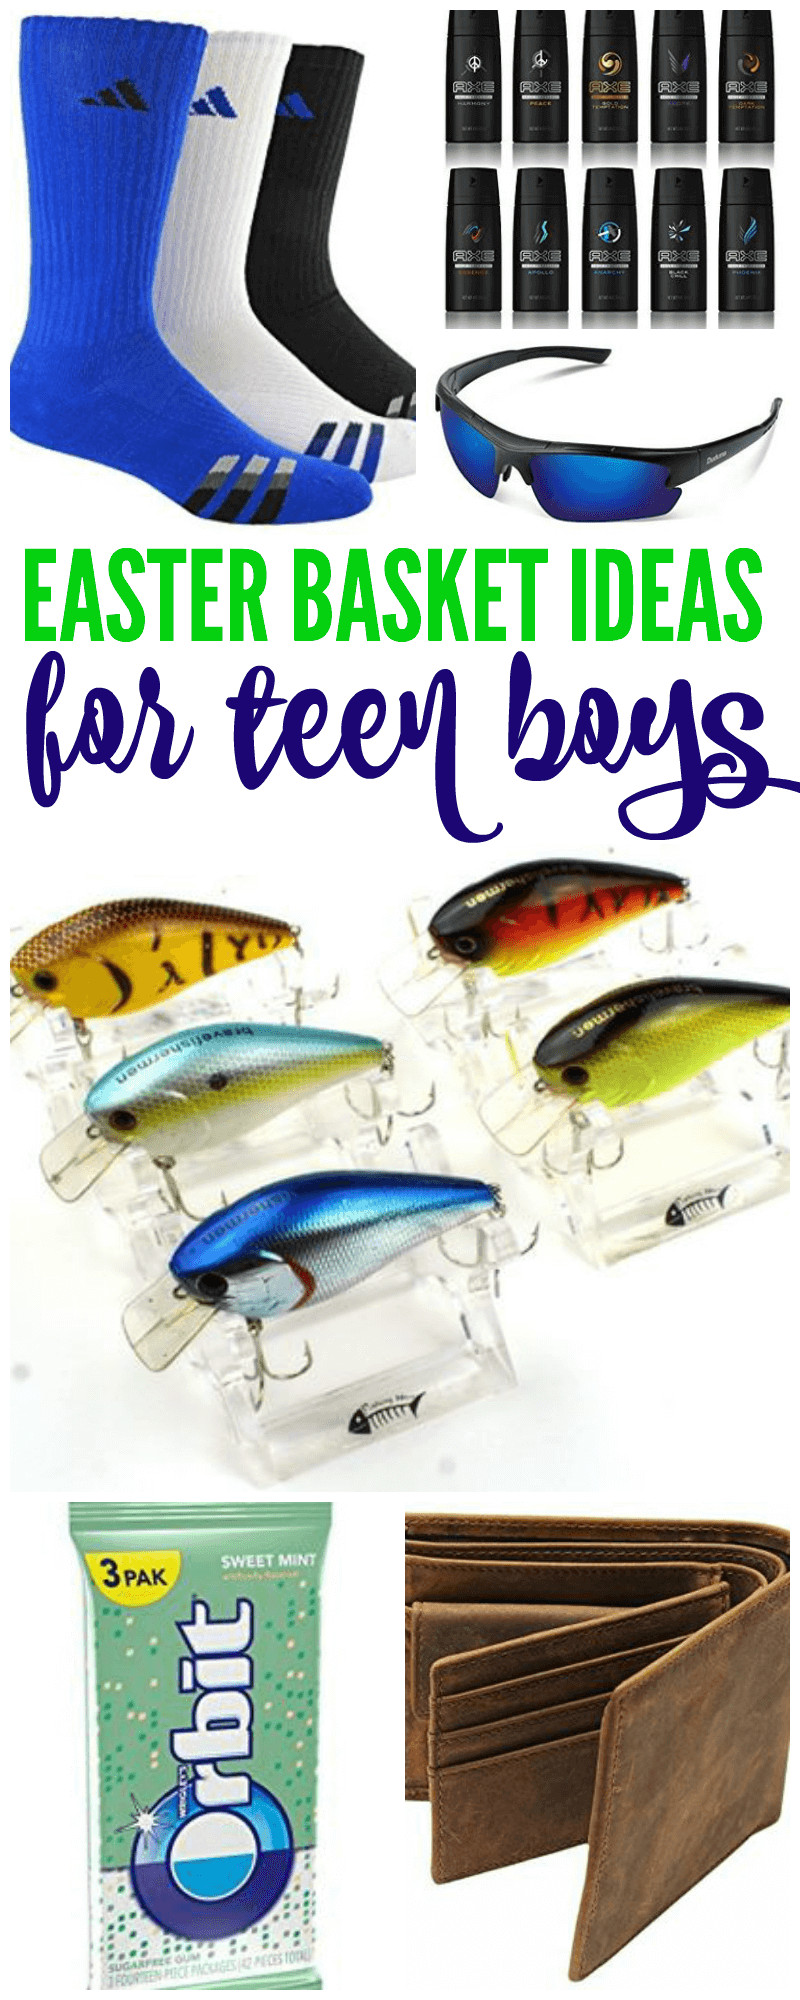 Easter Gift Ideas For Boys
 Easter Basket Ideas for Teen Boys